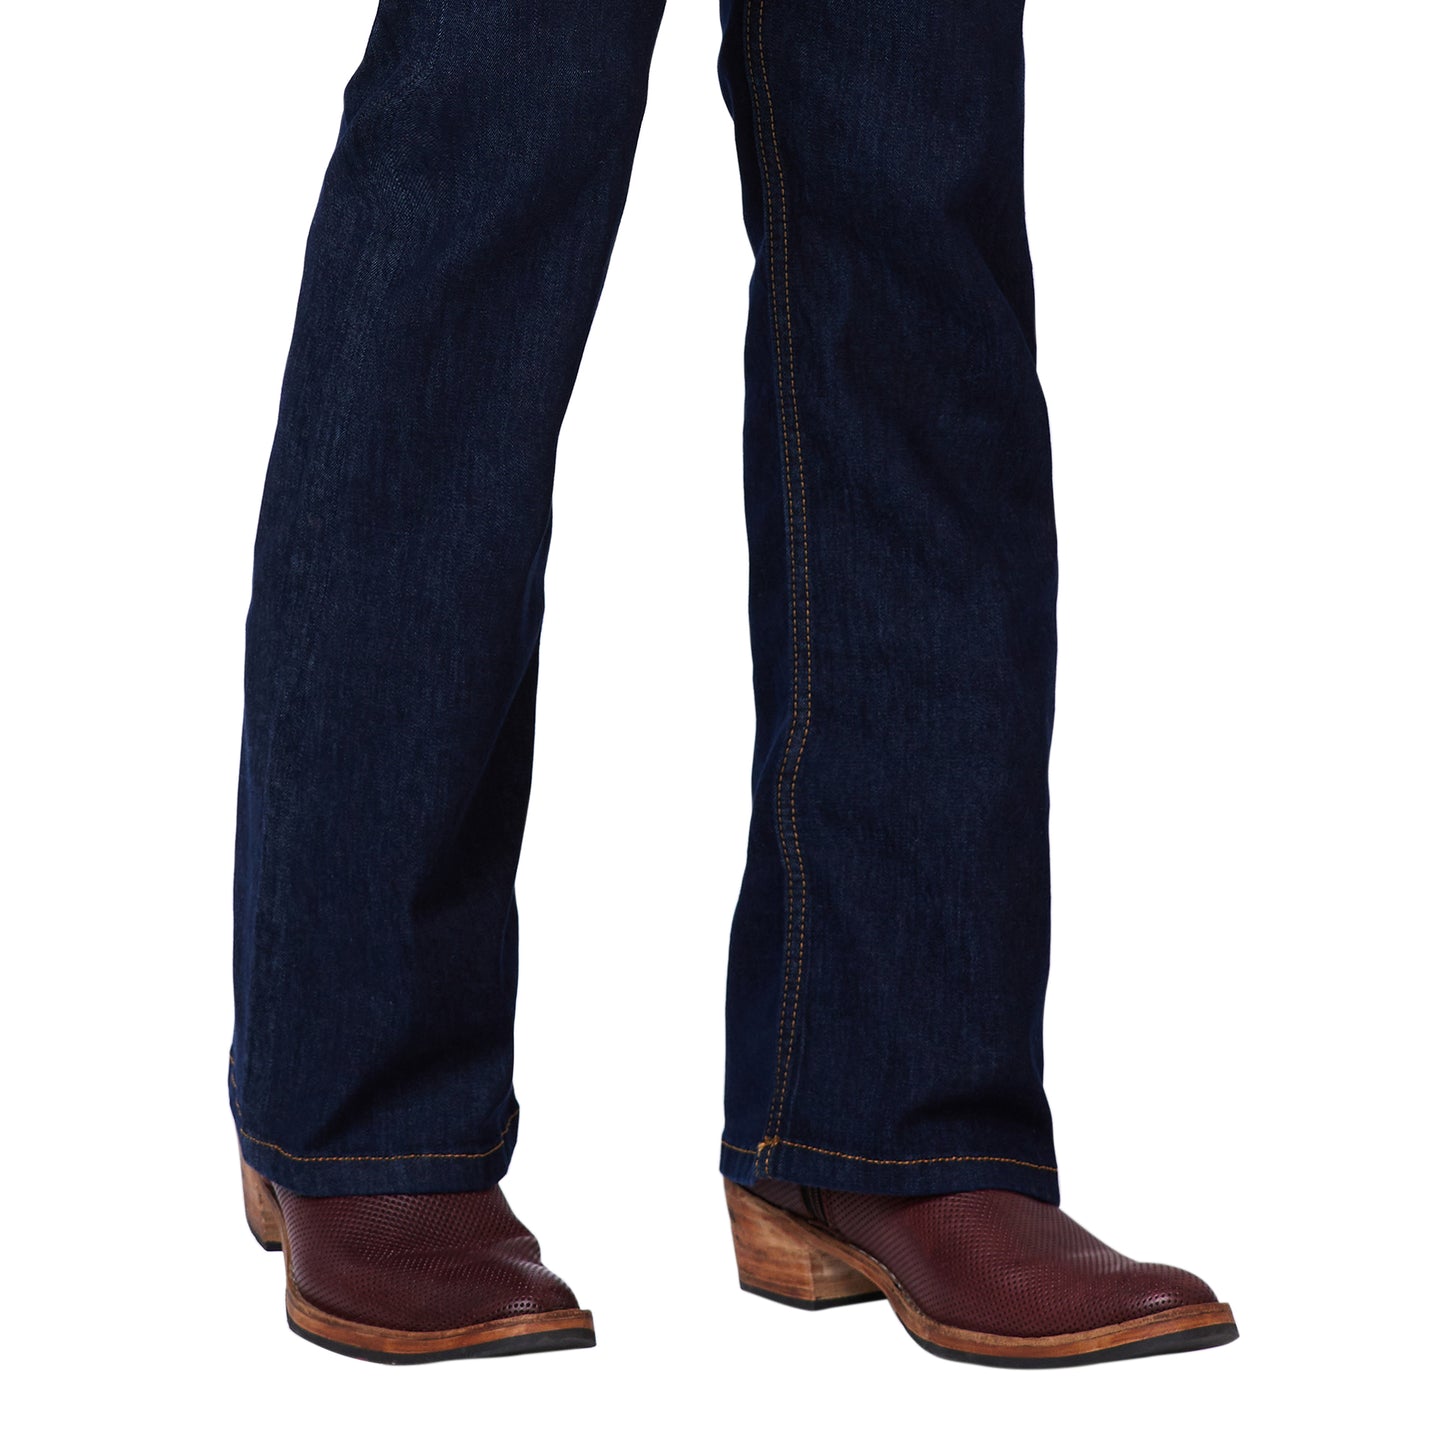 Boot-cut Denim Jeans With Rust Stitch.